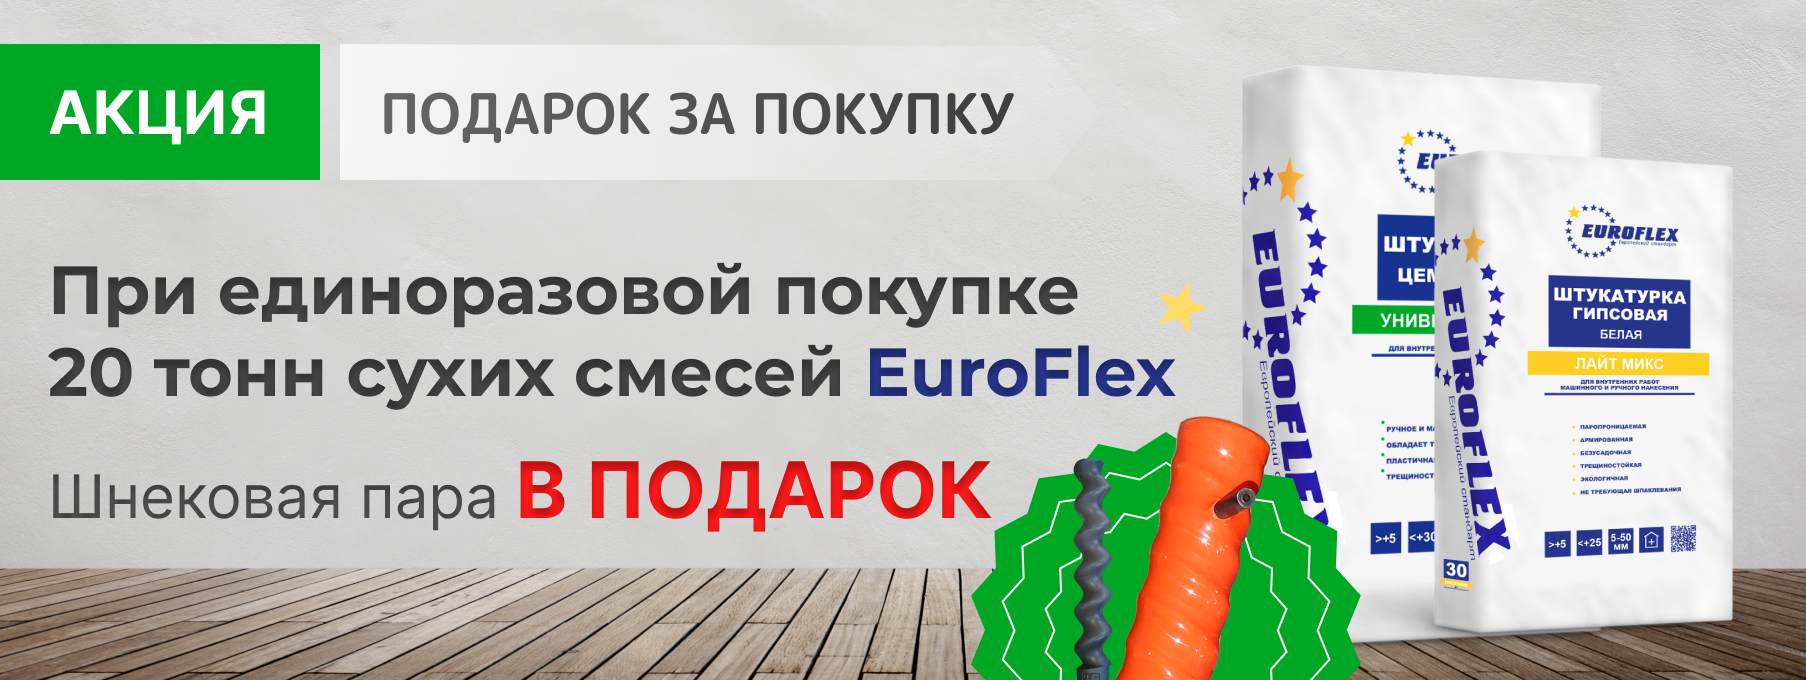 EuroFlex - производители строительных материалов